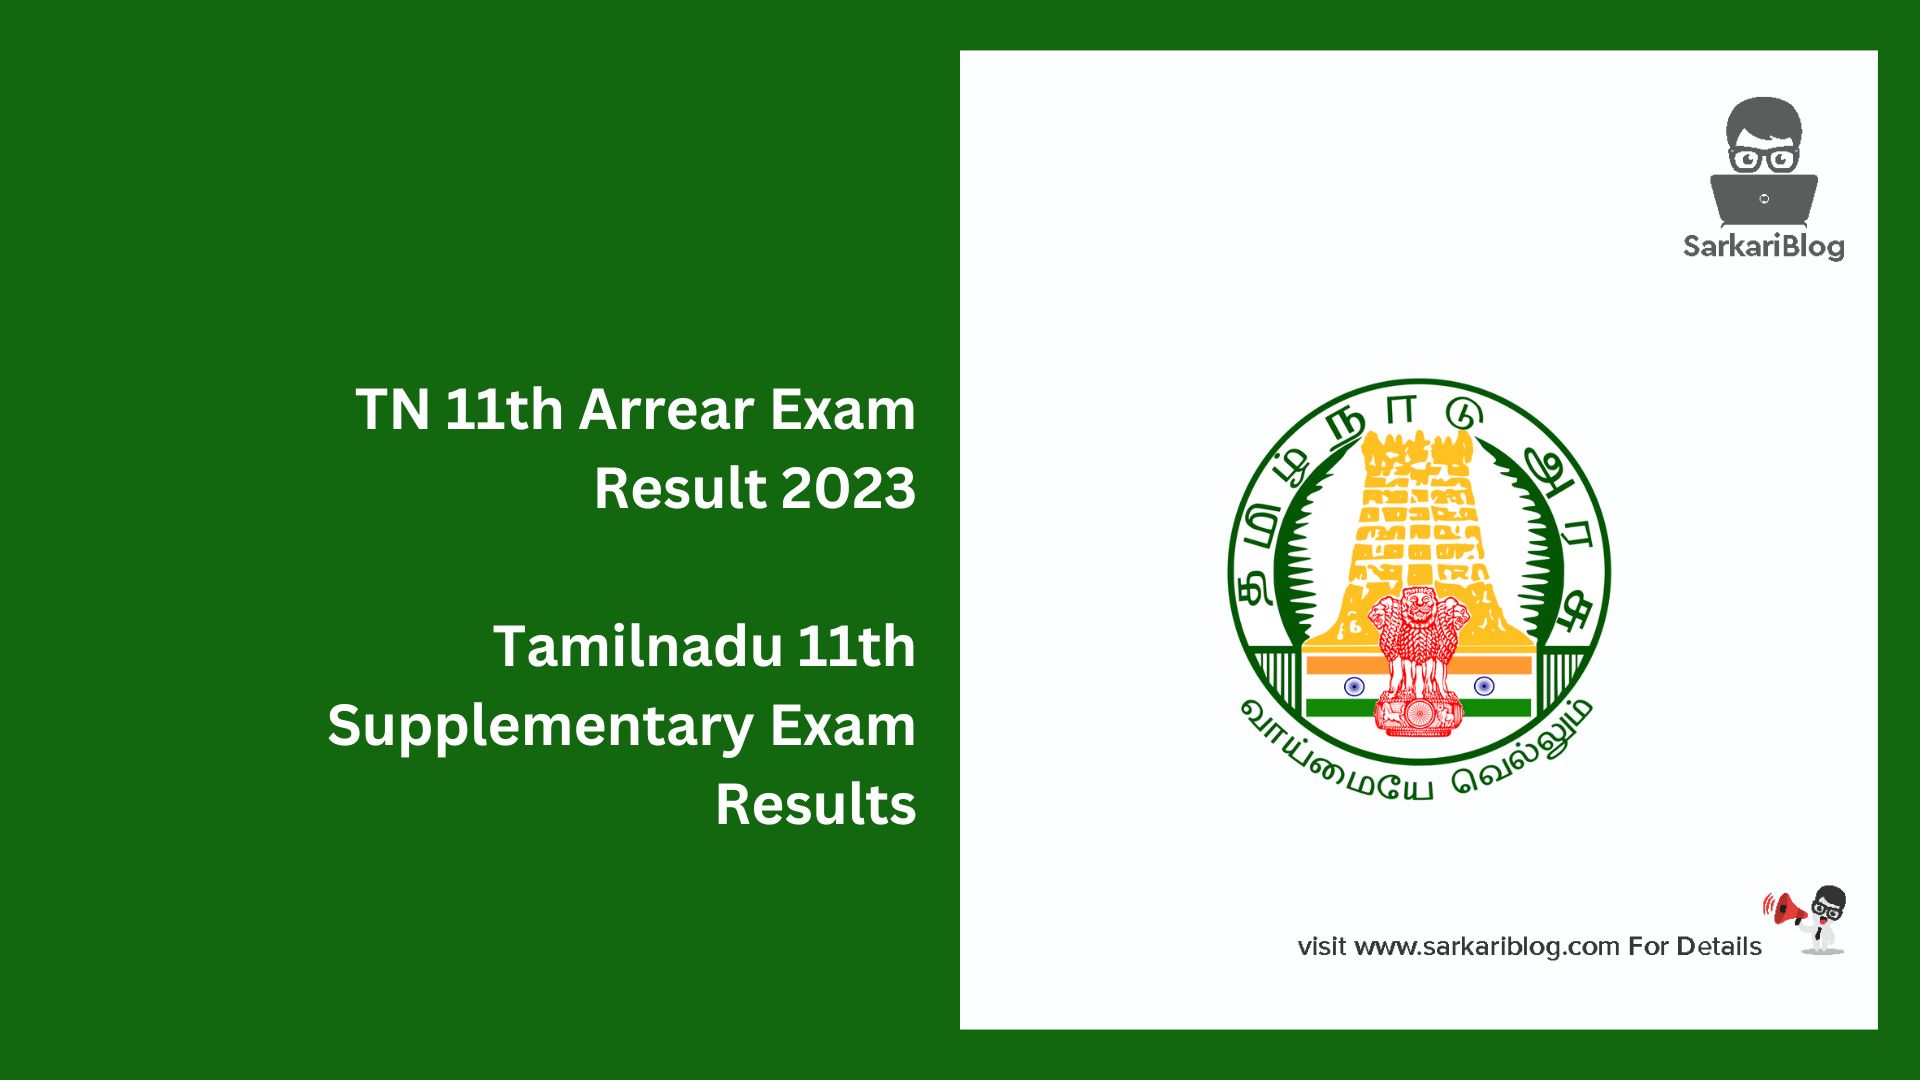 TN 11th Arrear Exam Result 2023